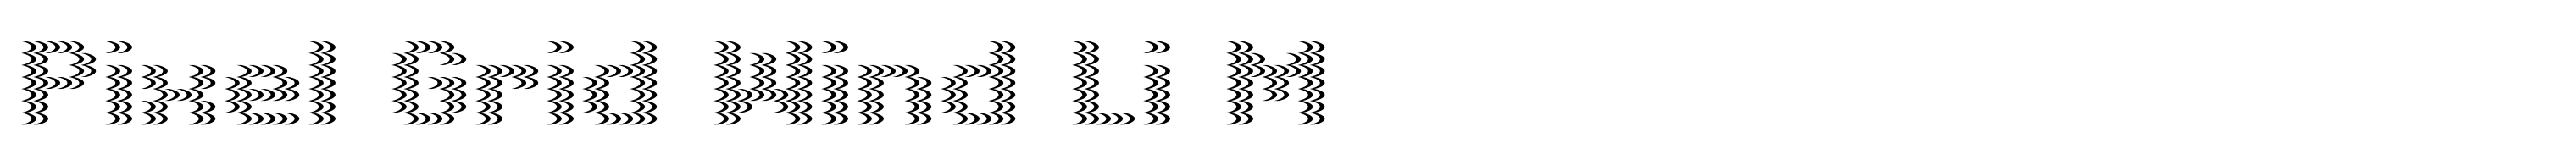 Pixel Grid Wind Li M